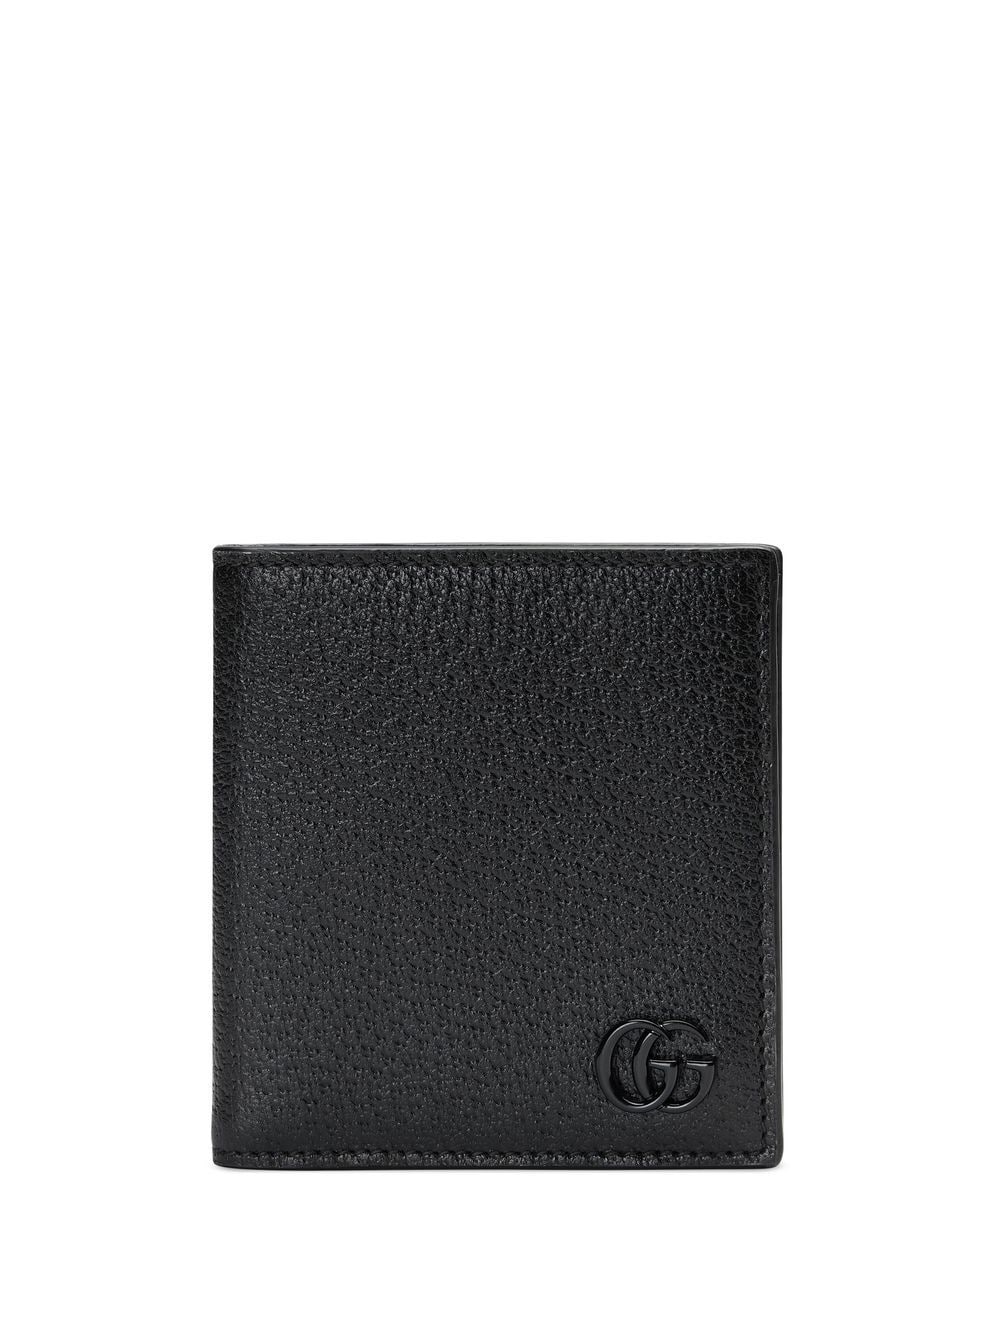 Gucci GG Marmont card case wallet - Black von Gucci